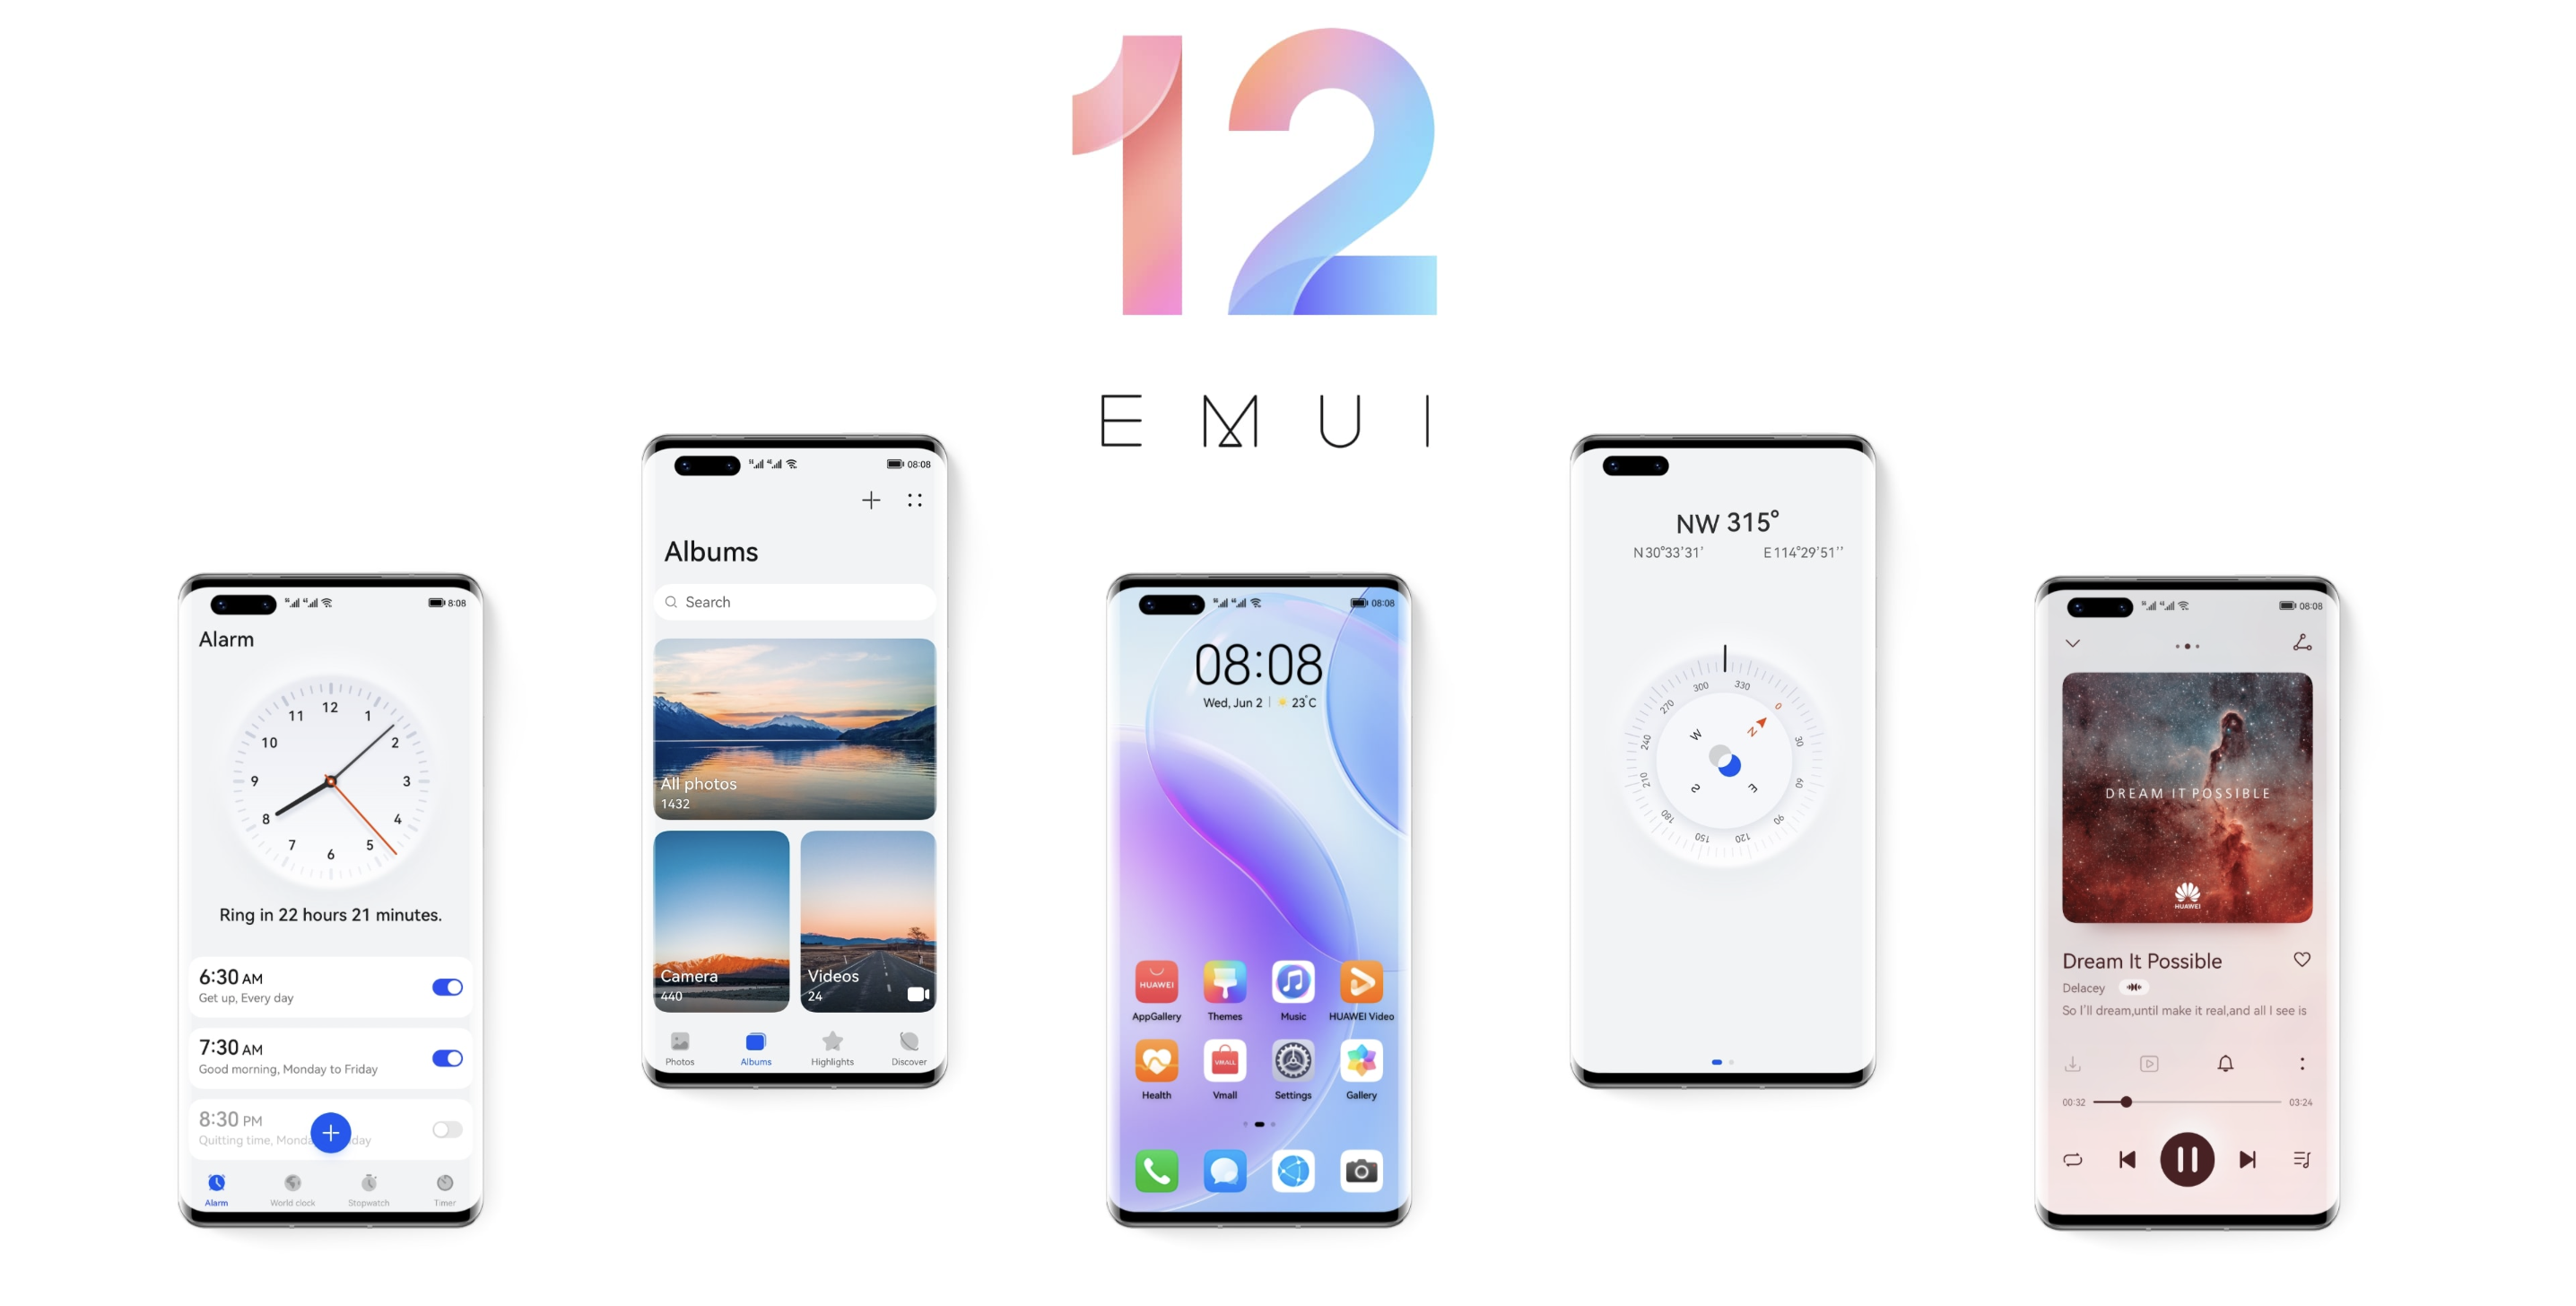 Nieoczekiwanie: Huawei prezentuje EMUI 12 z nowymi funkcjami i zaktualizowanym interfejsem